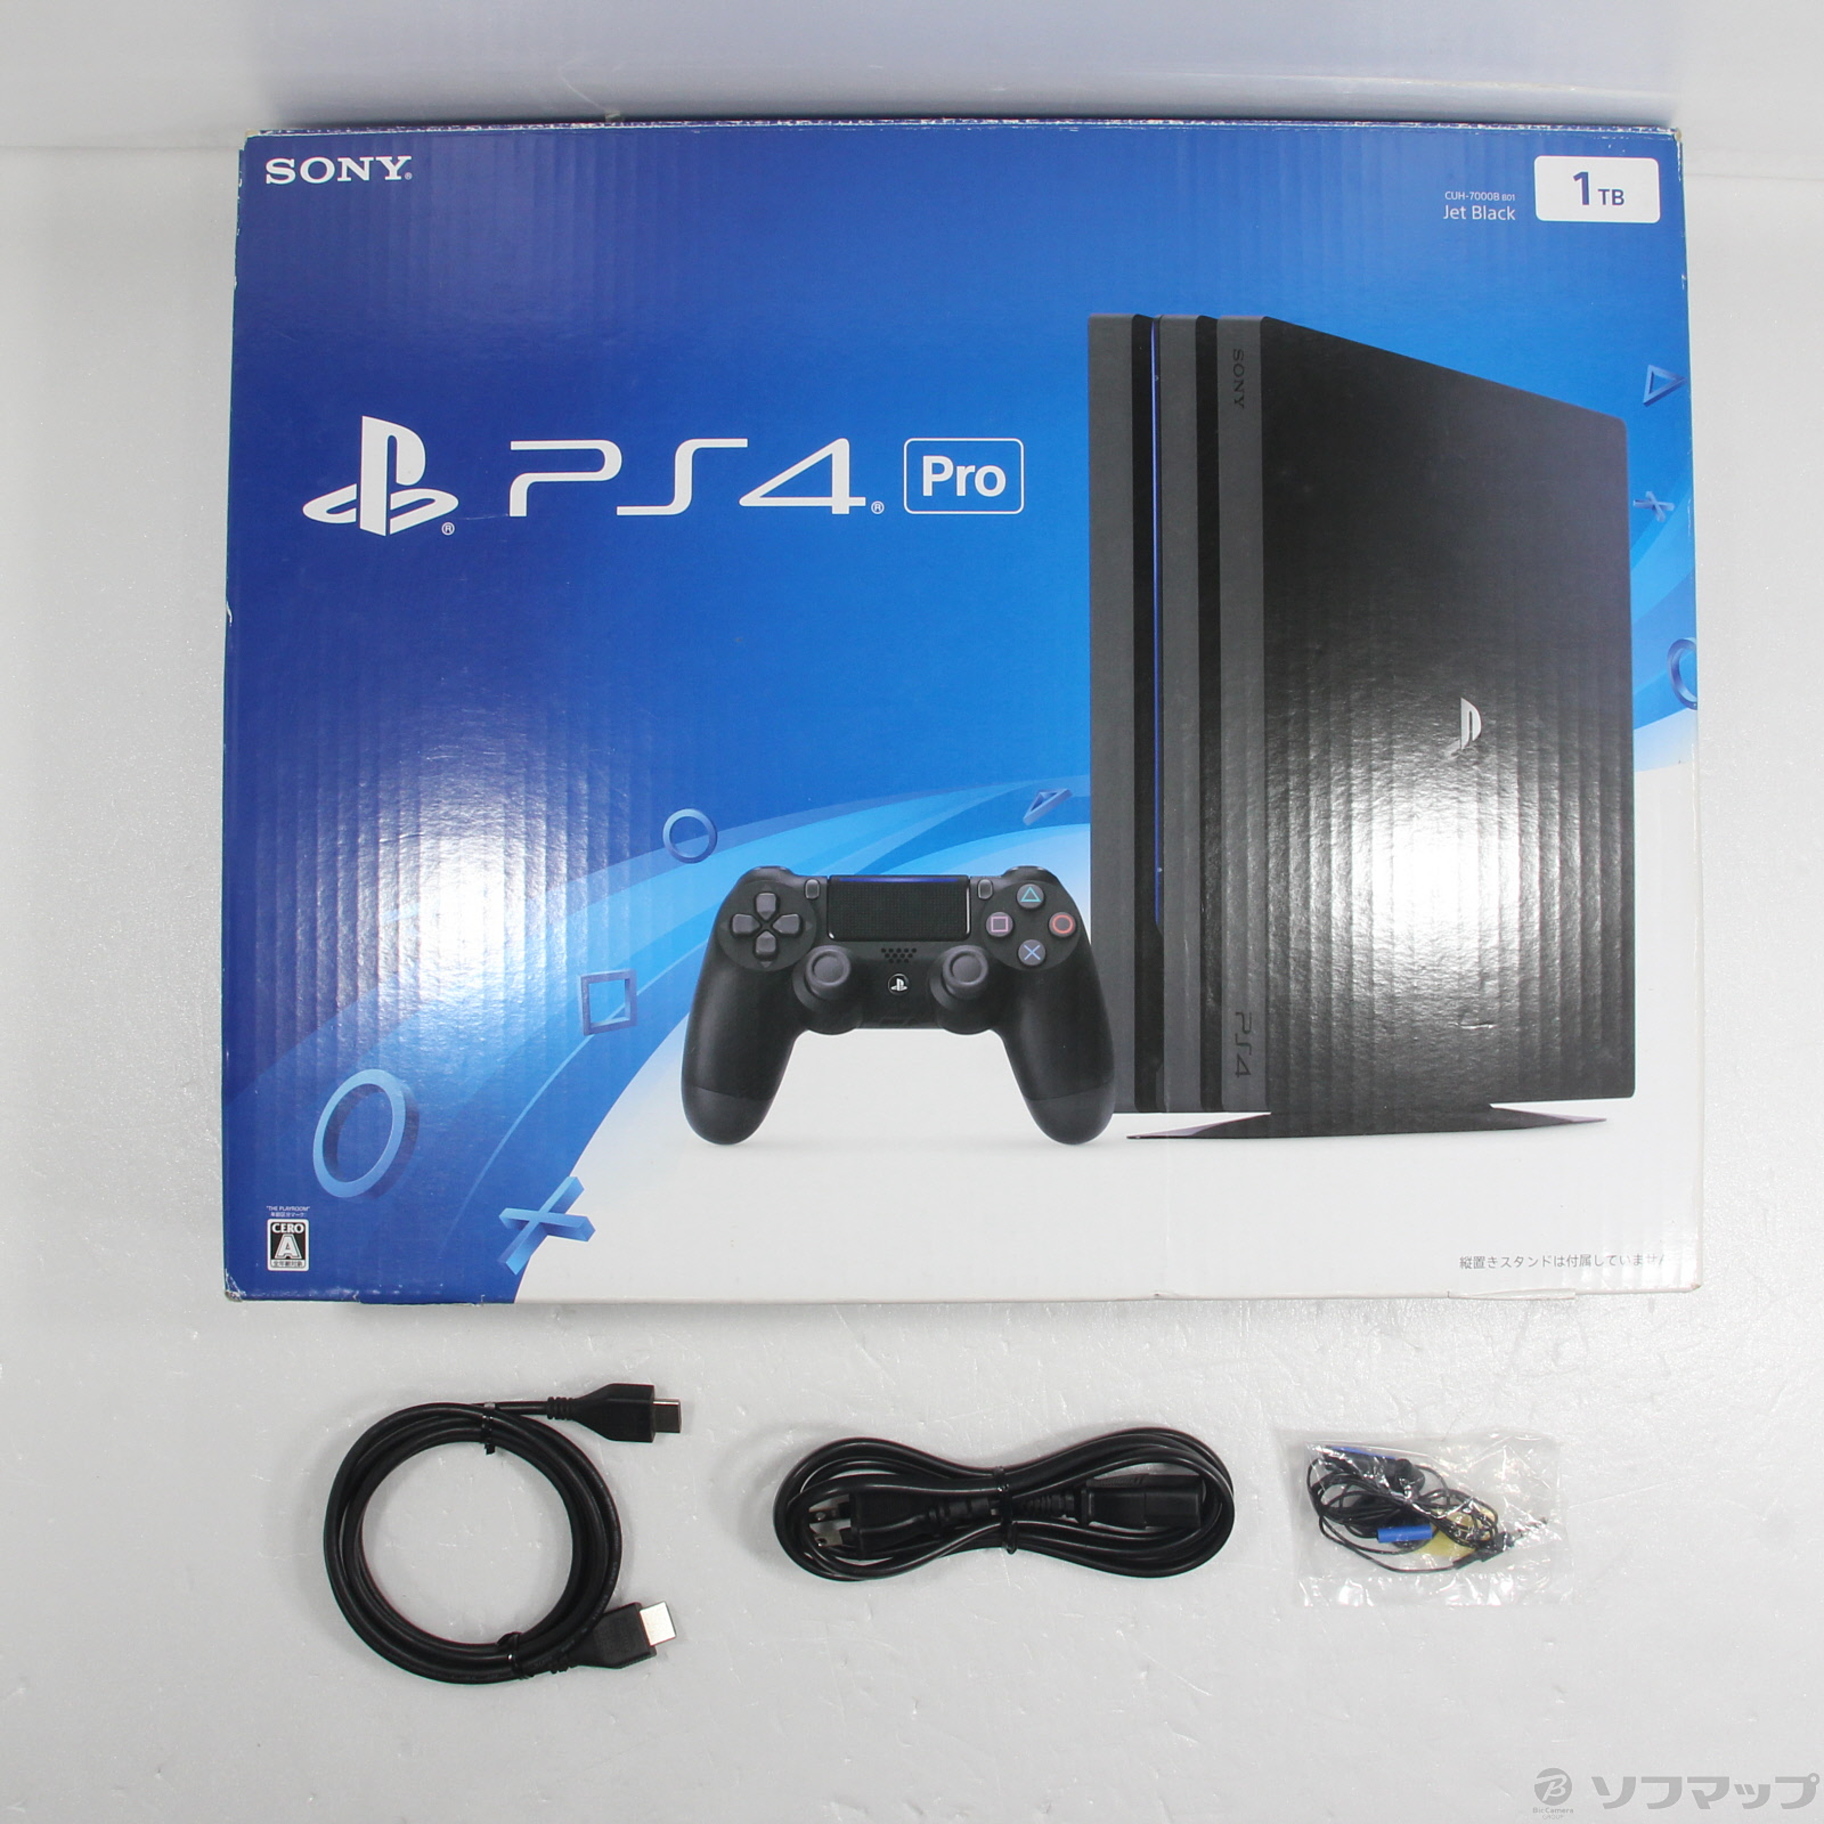 SONY プレイステーション4 Pro PS4 Pro本体 1TB CUH-7000BB01 ジェット ...